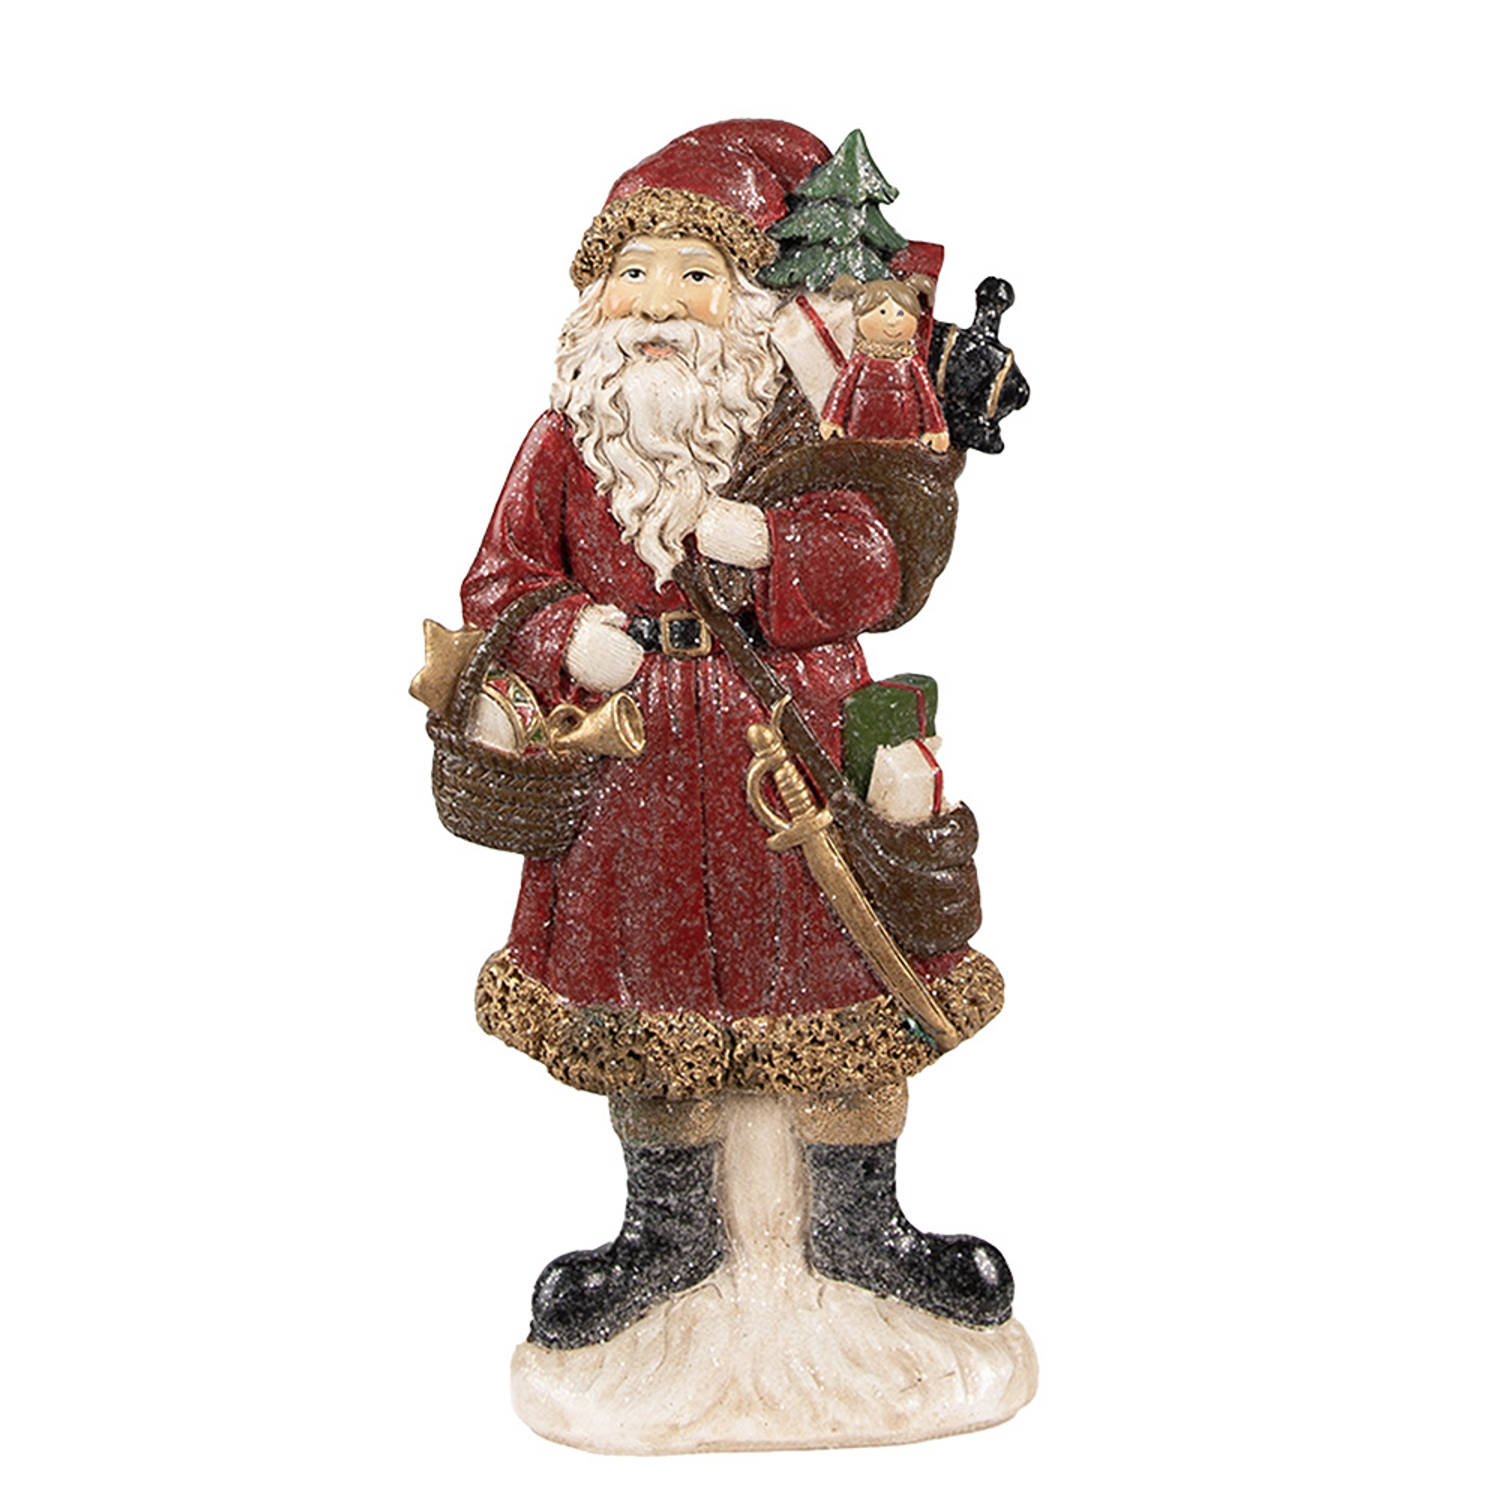 HAES DECO - Kerstman deco Figuur - Formaat 12x4x24 cm - Kleur Rood - Materiaal Polyresin - Kerst Figuur, Kerstdecoratie